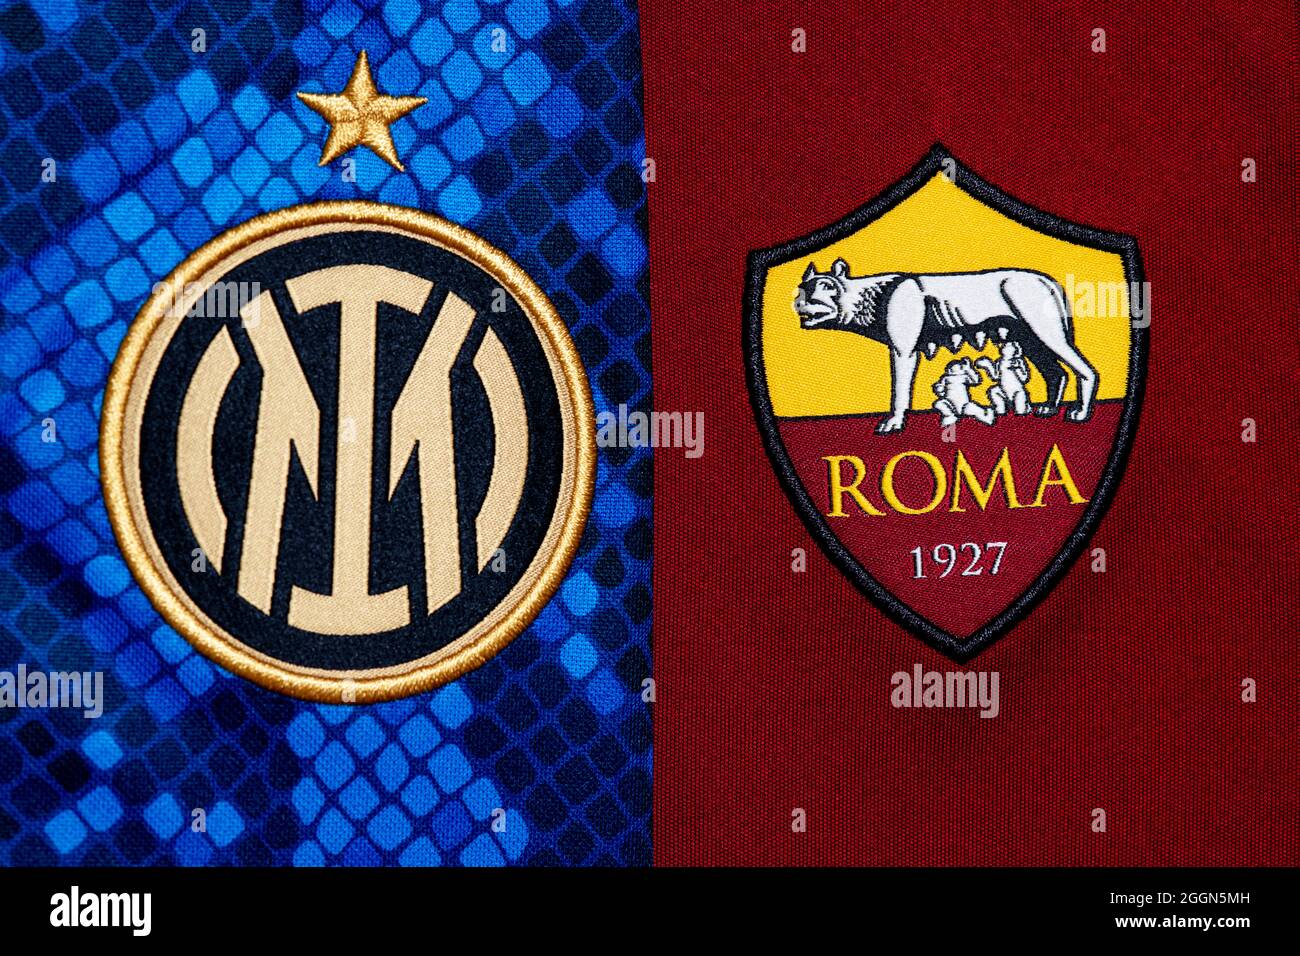 Nahaufnahme des Vereinswappens von Inter & Roma. Stockfoto